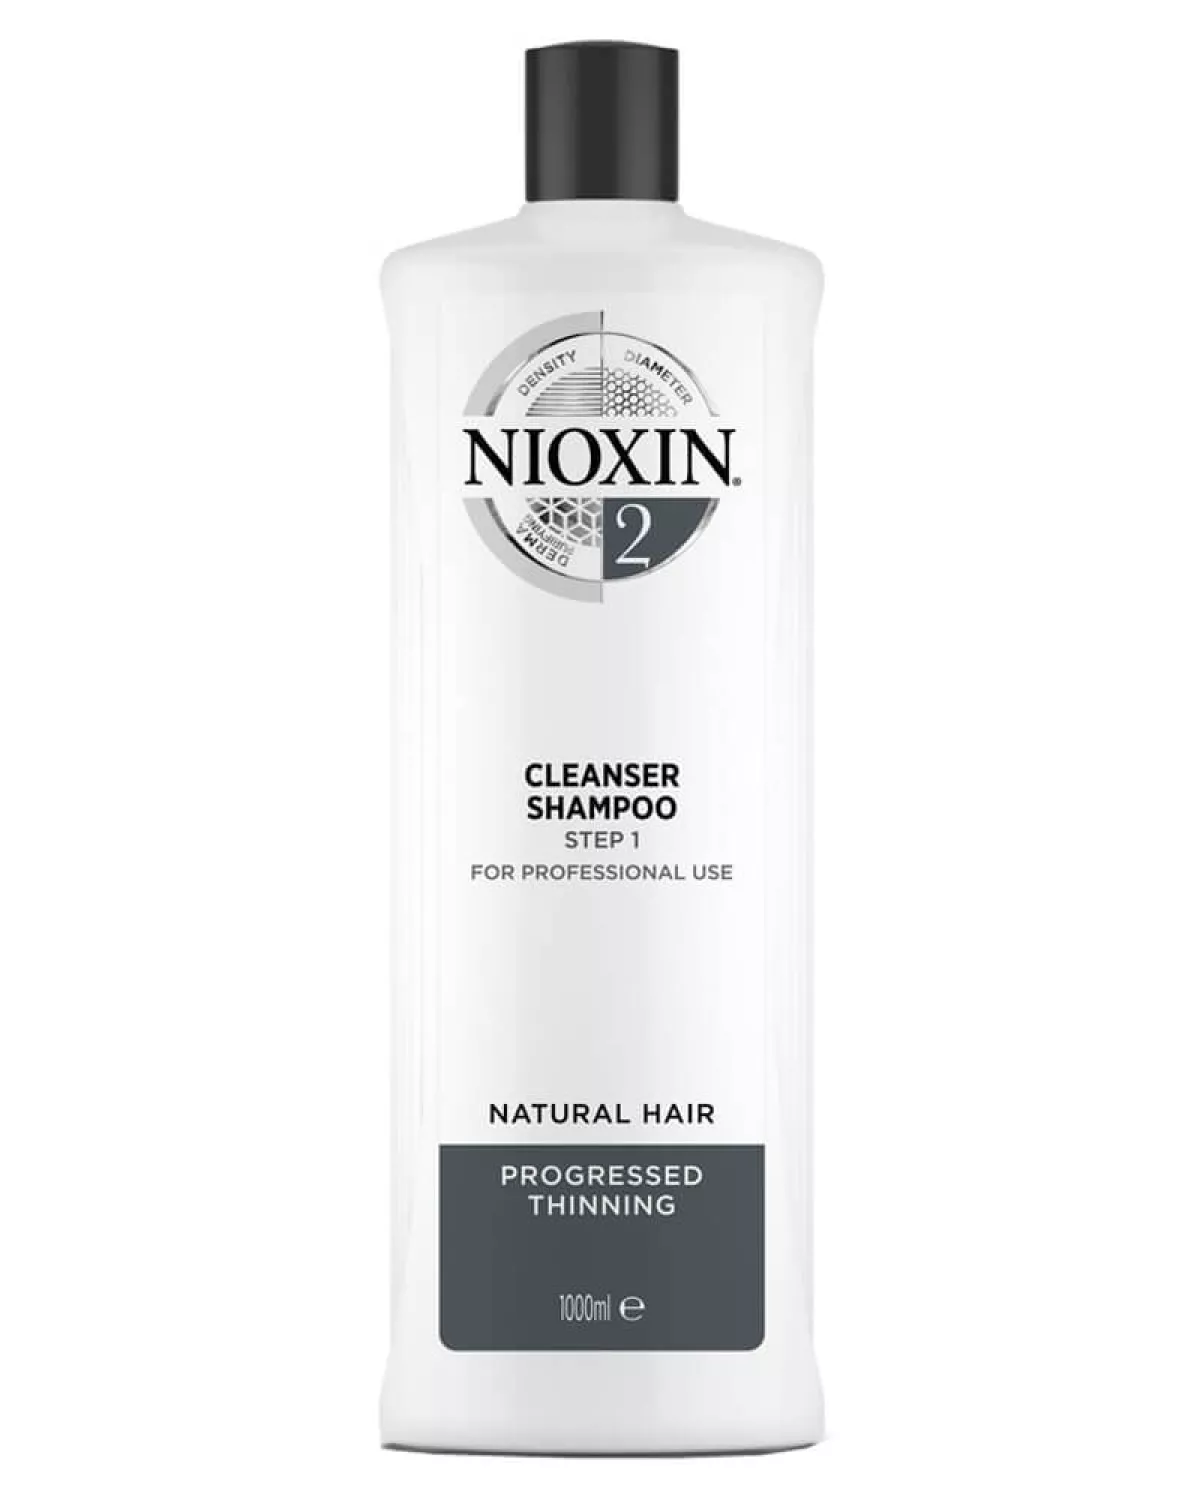 #1 - Nioxin 2 Cleanser Shampoo 1000 ml